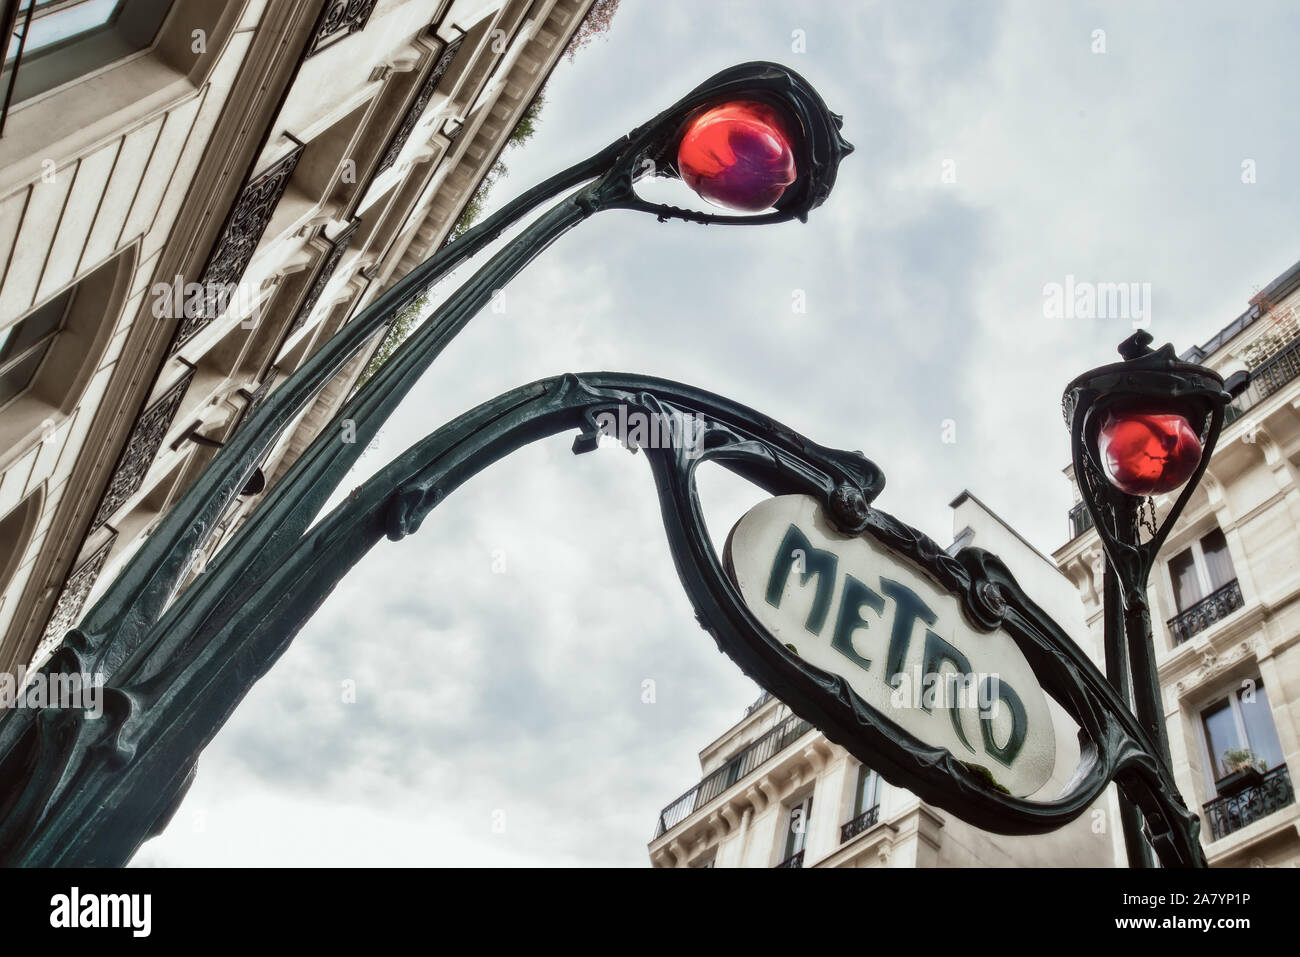 Entrée de l'une station de métro du métro Parisien conçu par Hector Guimard dans le style Art Nouveau, Paris France. Banque D'Images